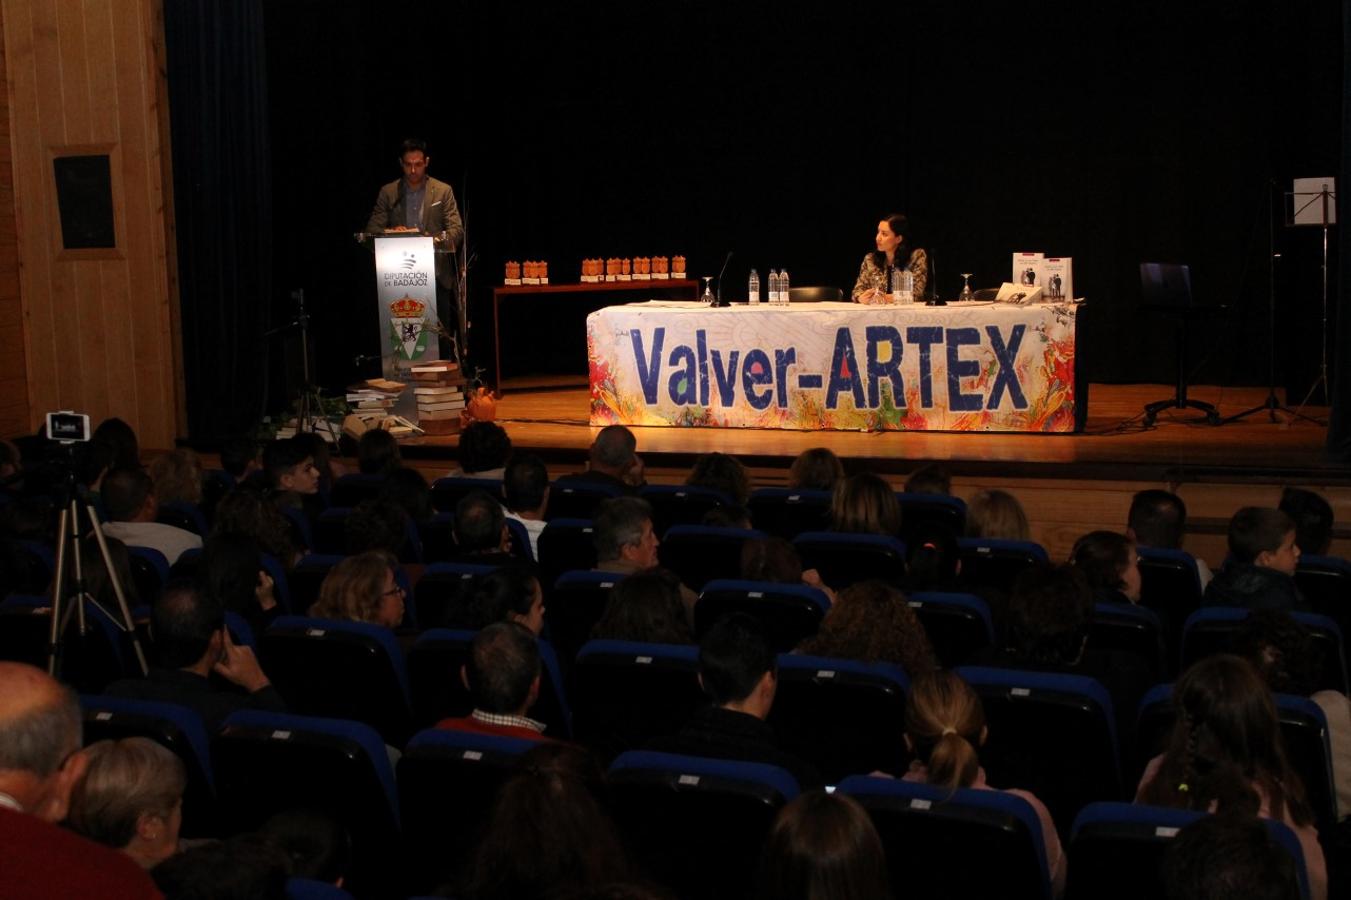 Valver-ARTEX (I)